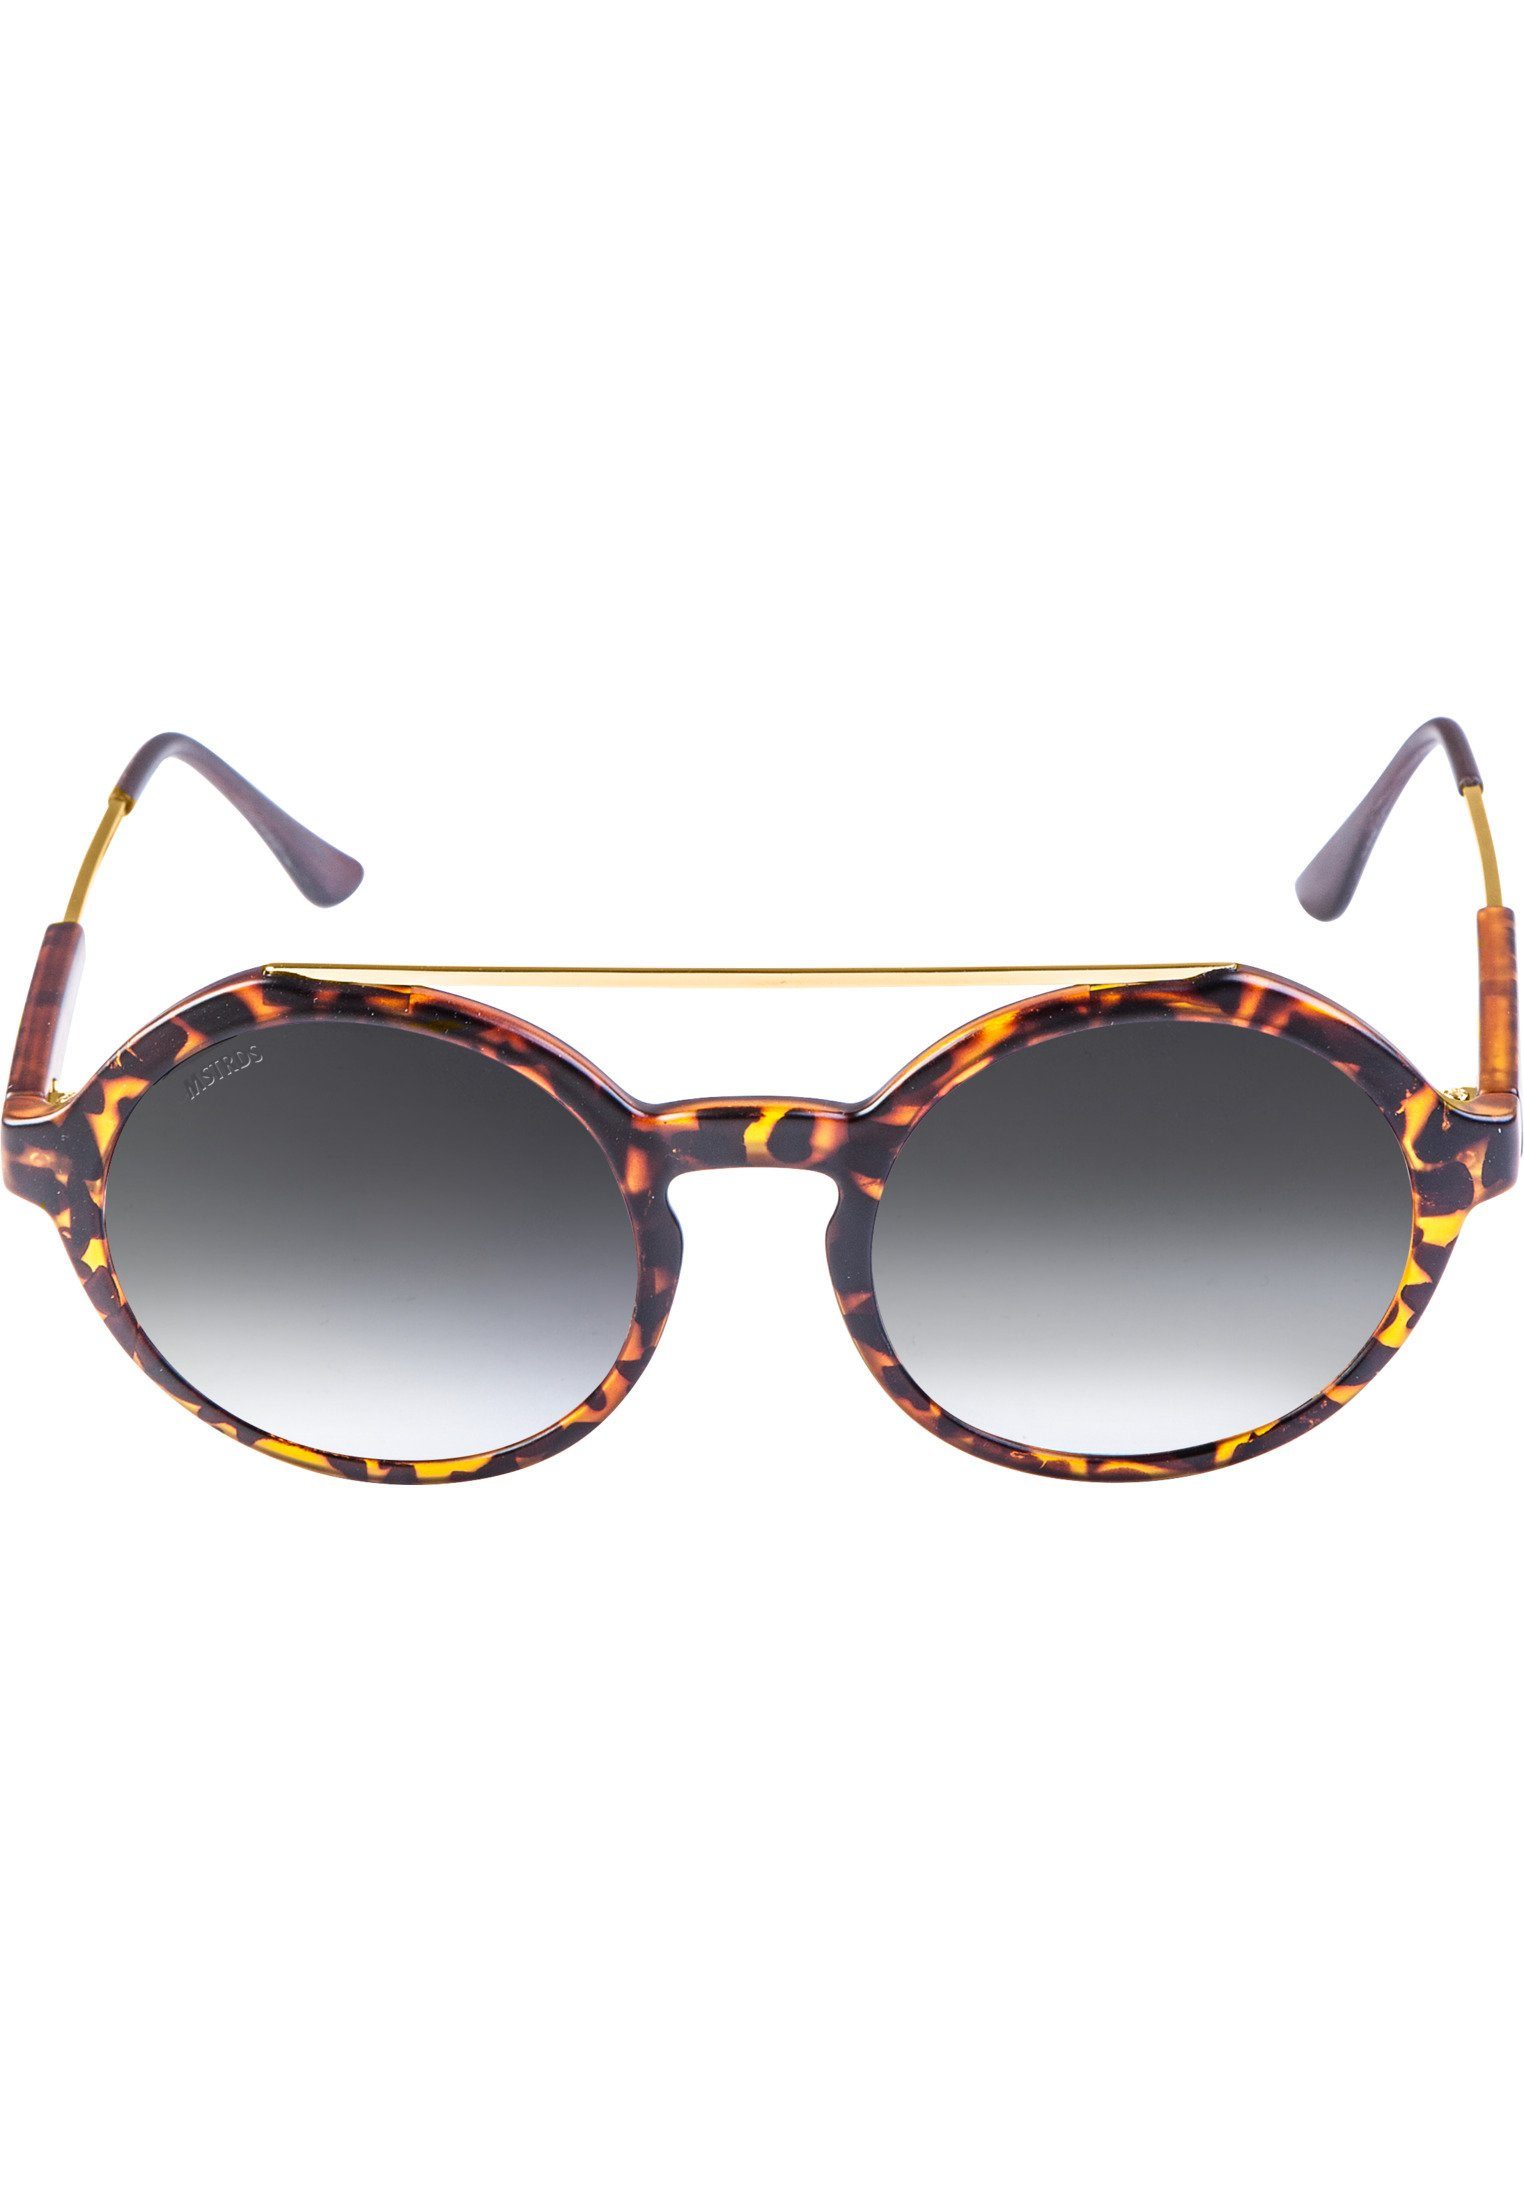 MSTRDS Sonnenbrille Accessoires Sunglasses Retro Space havanna/grey